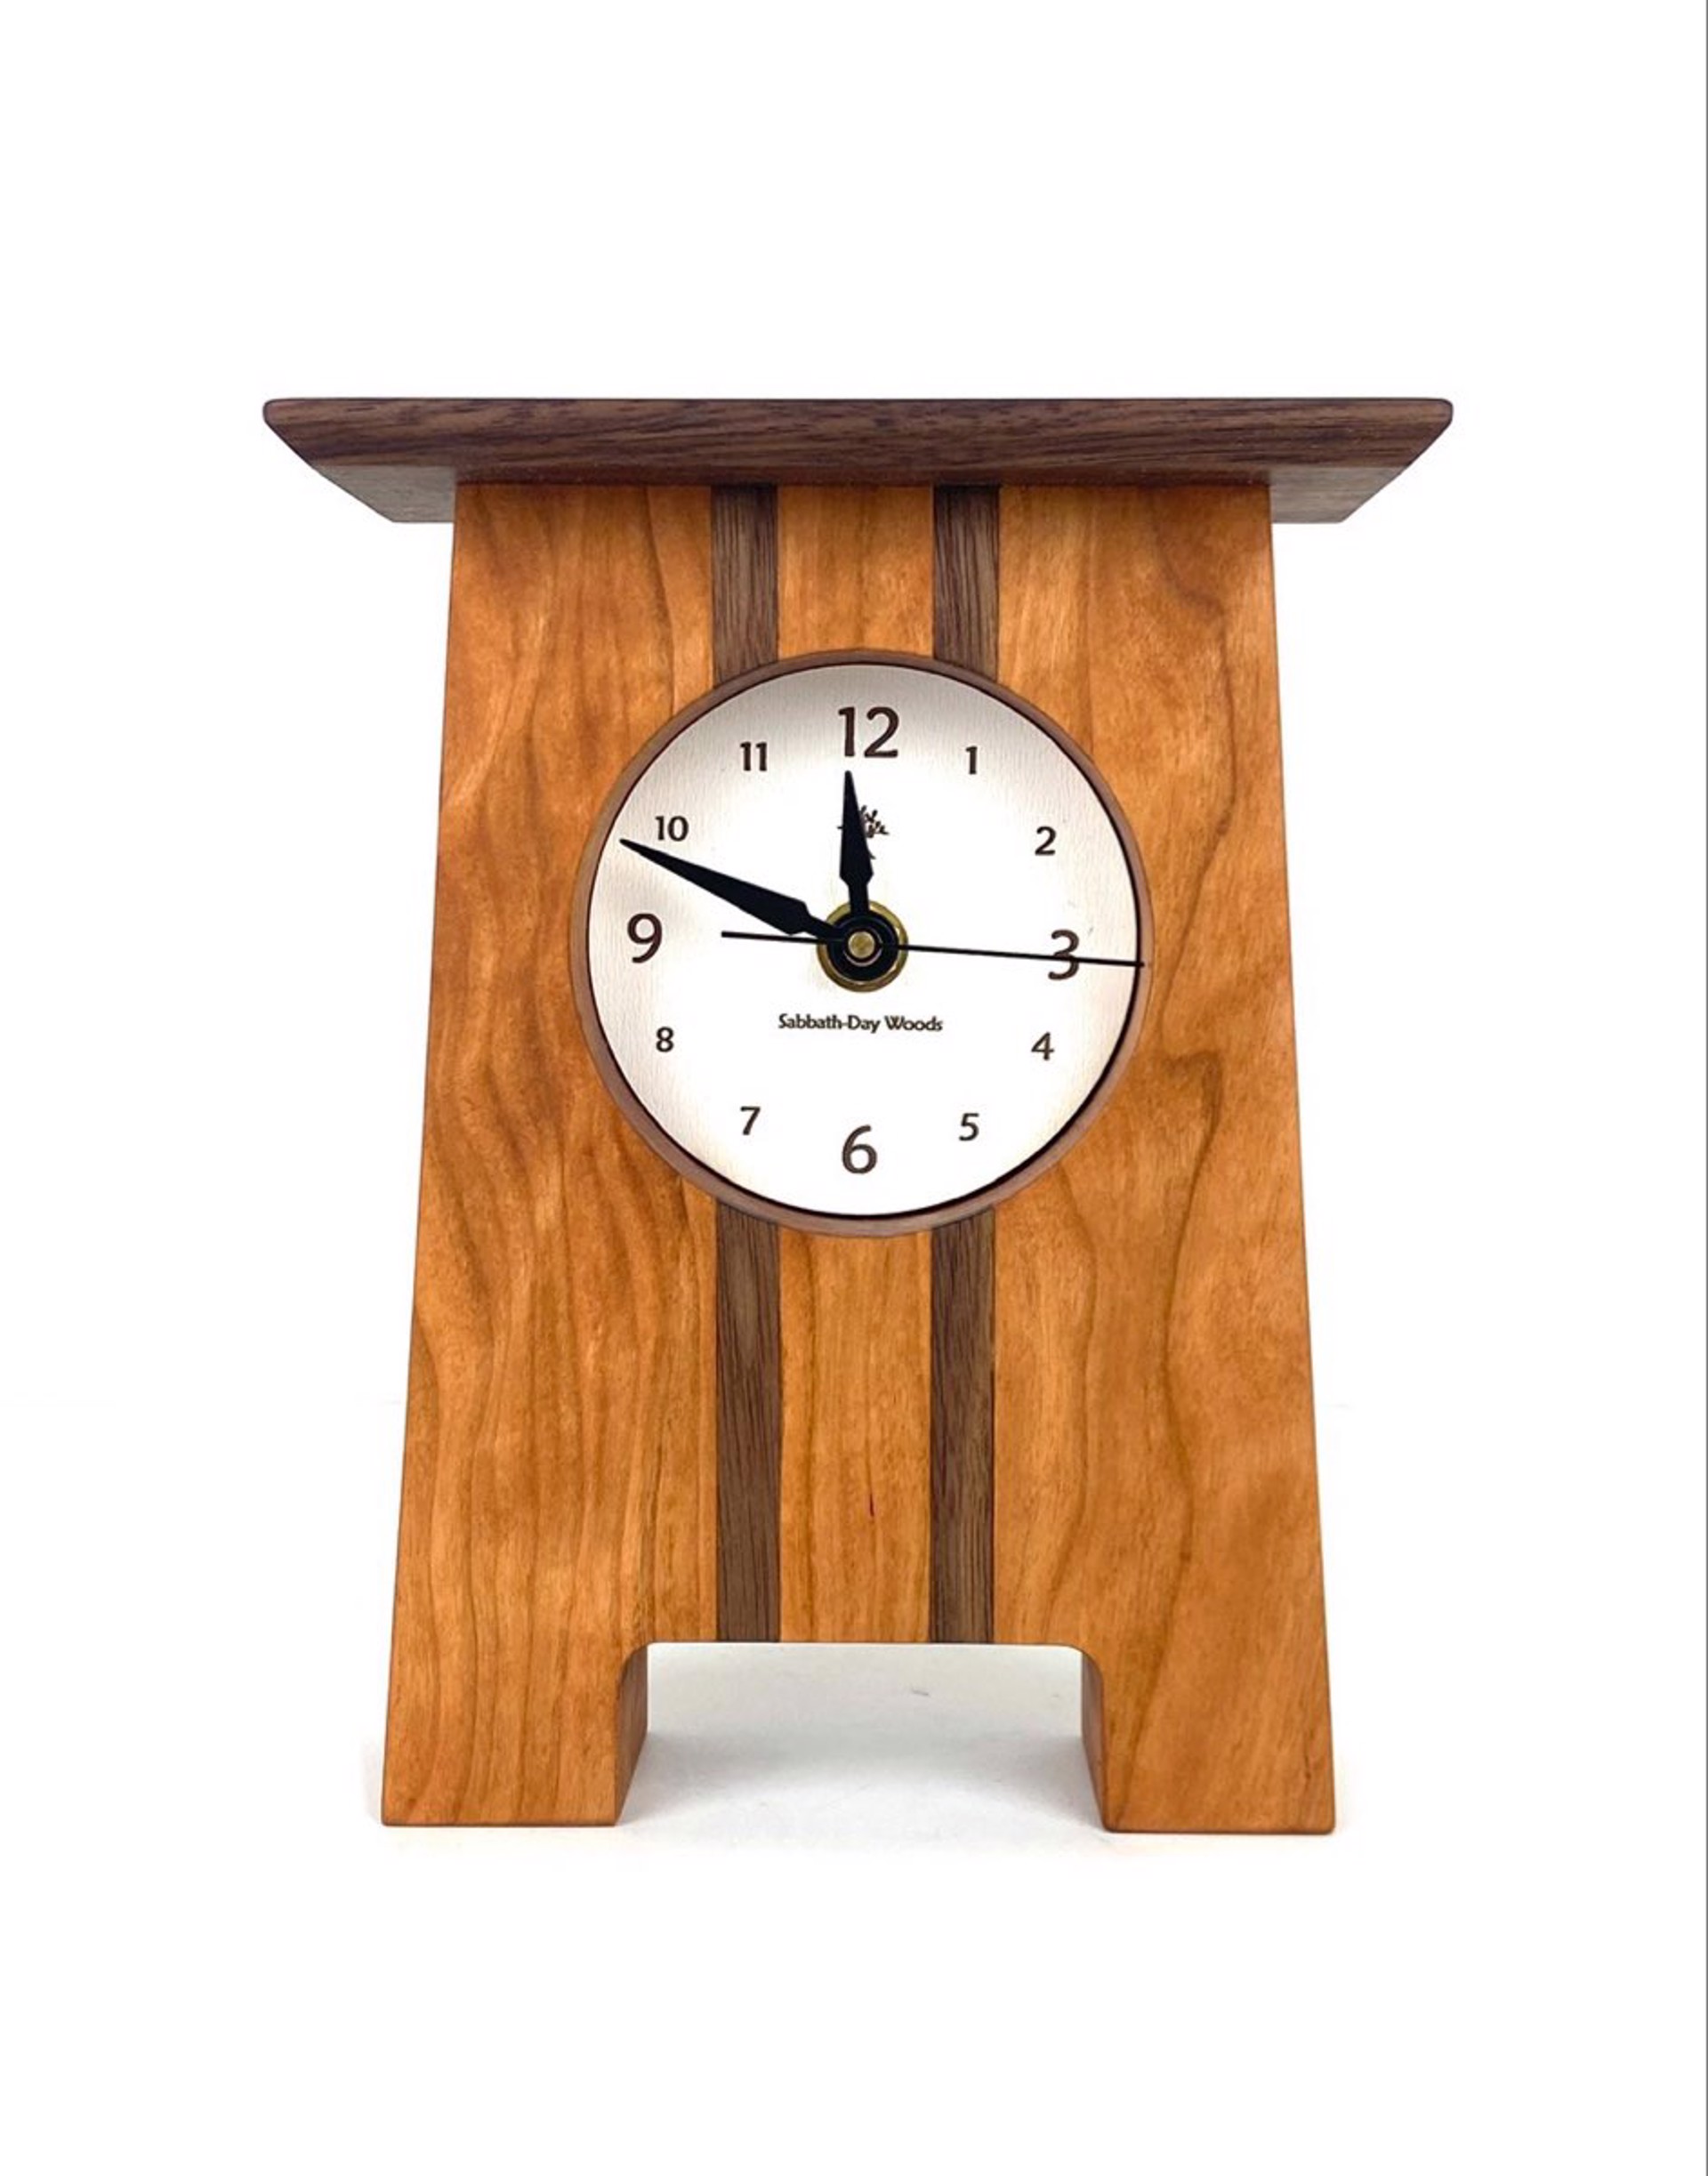 Craftsman Desk Clock by Sabbath Day Woods